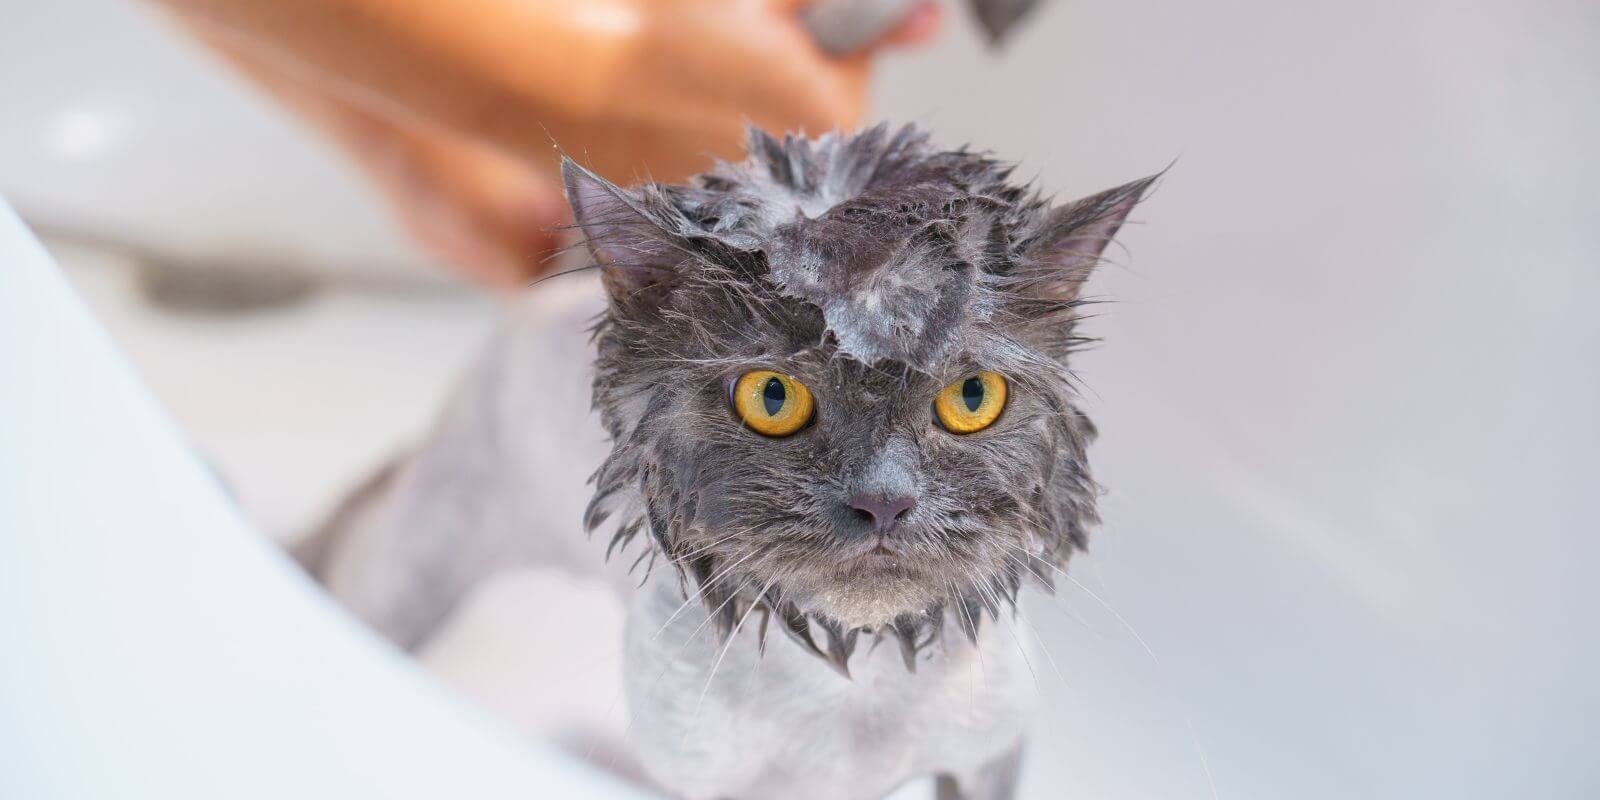 Grumpy grey cat getting a bath